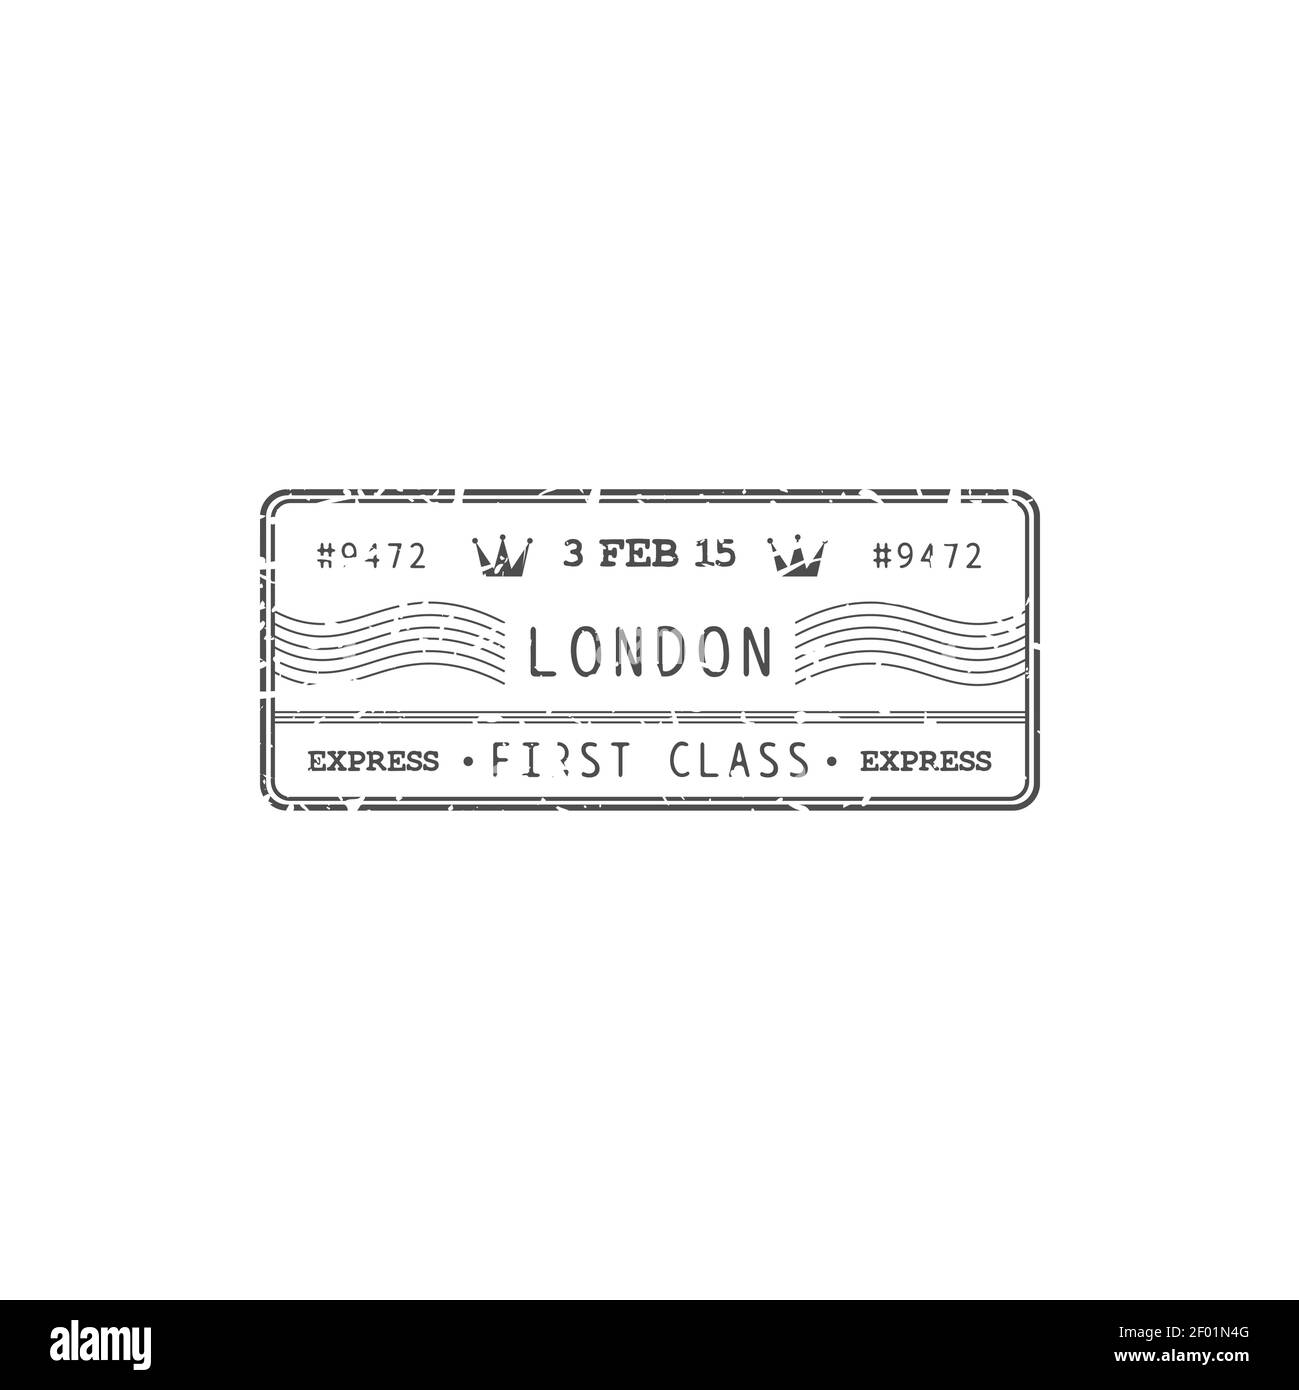 Posta aerea del Regno Unito, timbro Londra isolato post reale con cartello di consegna espresso di prima classe. Icona grunge vettoriale, postmark. Trasporto di corrispondenza postale Illustrazione Vettoriale